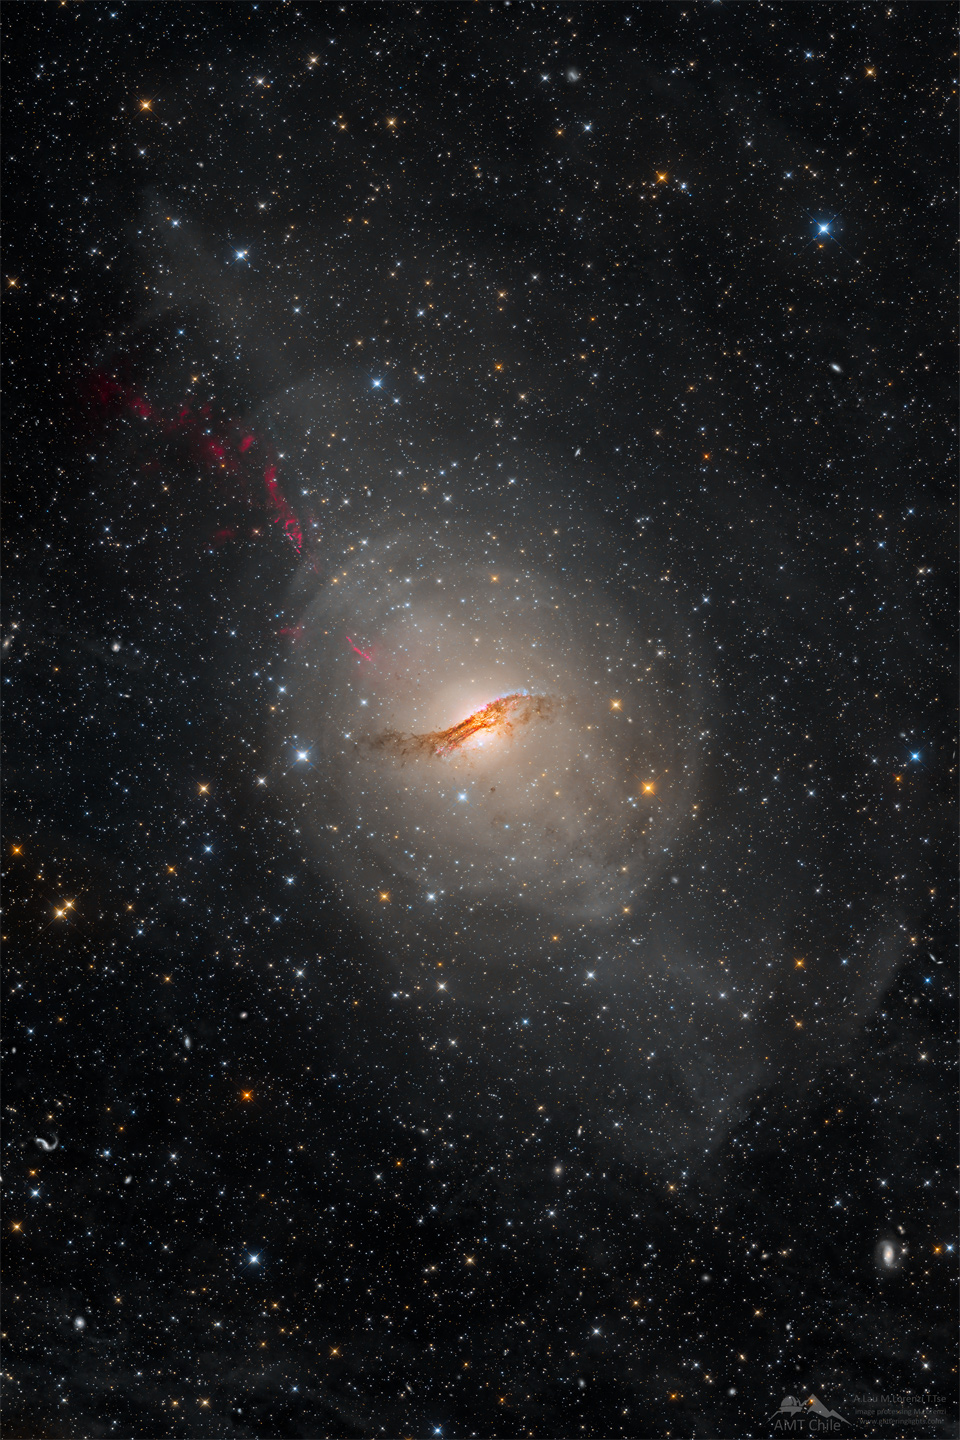 Die Galaxie Zentaurus A leuchtet in der Mitte dieses Sternenfeldes, davor verläuft ein dunkles Staubband. Nach links oben strömt ein roter Strahl.